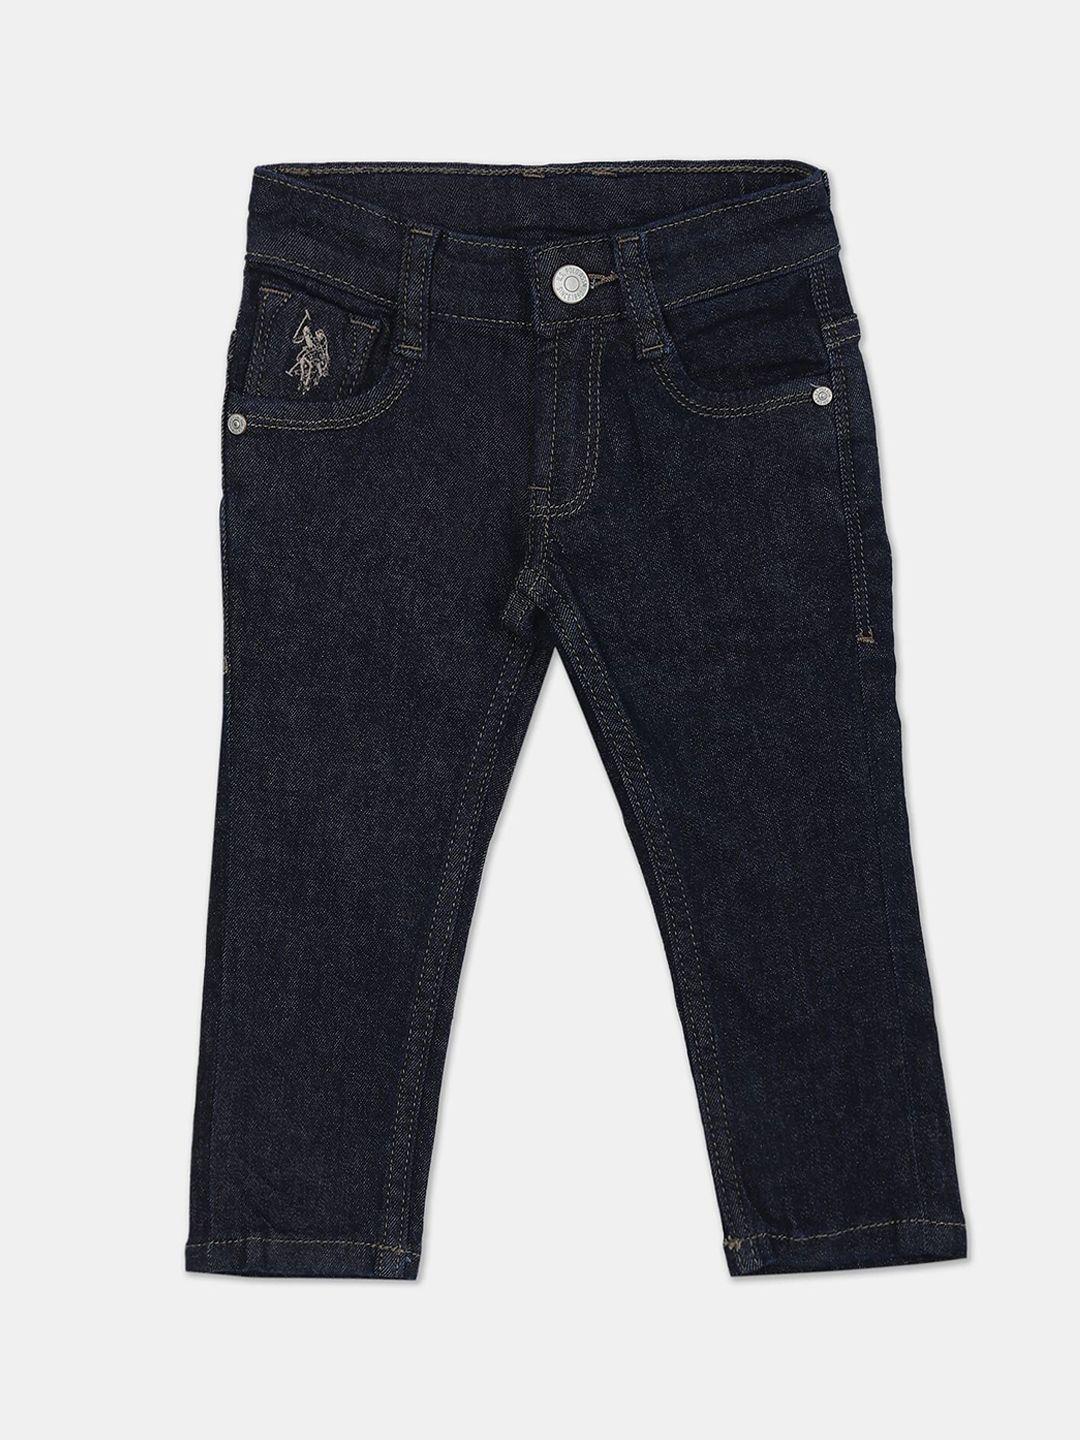 u.s. polo assn. boys cotton slim fit jeans